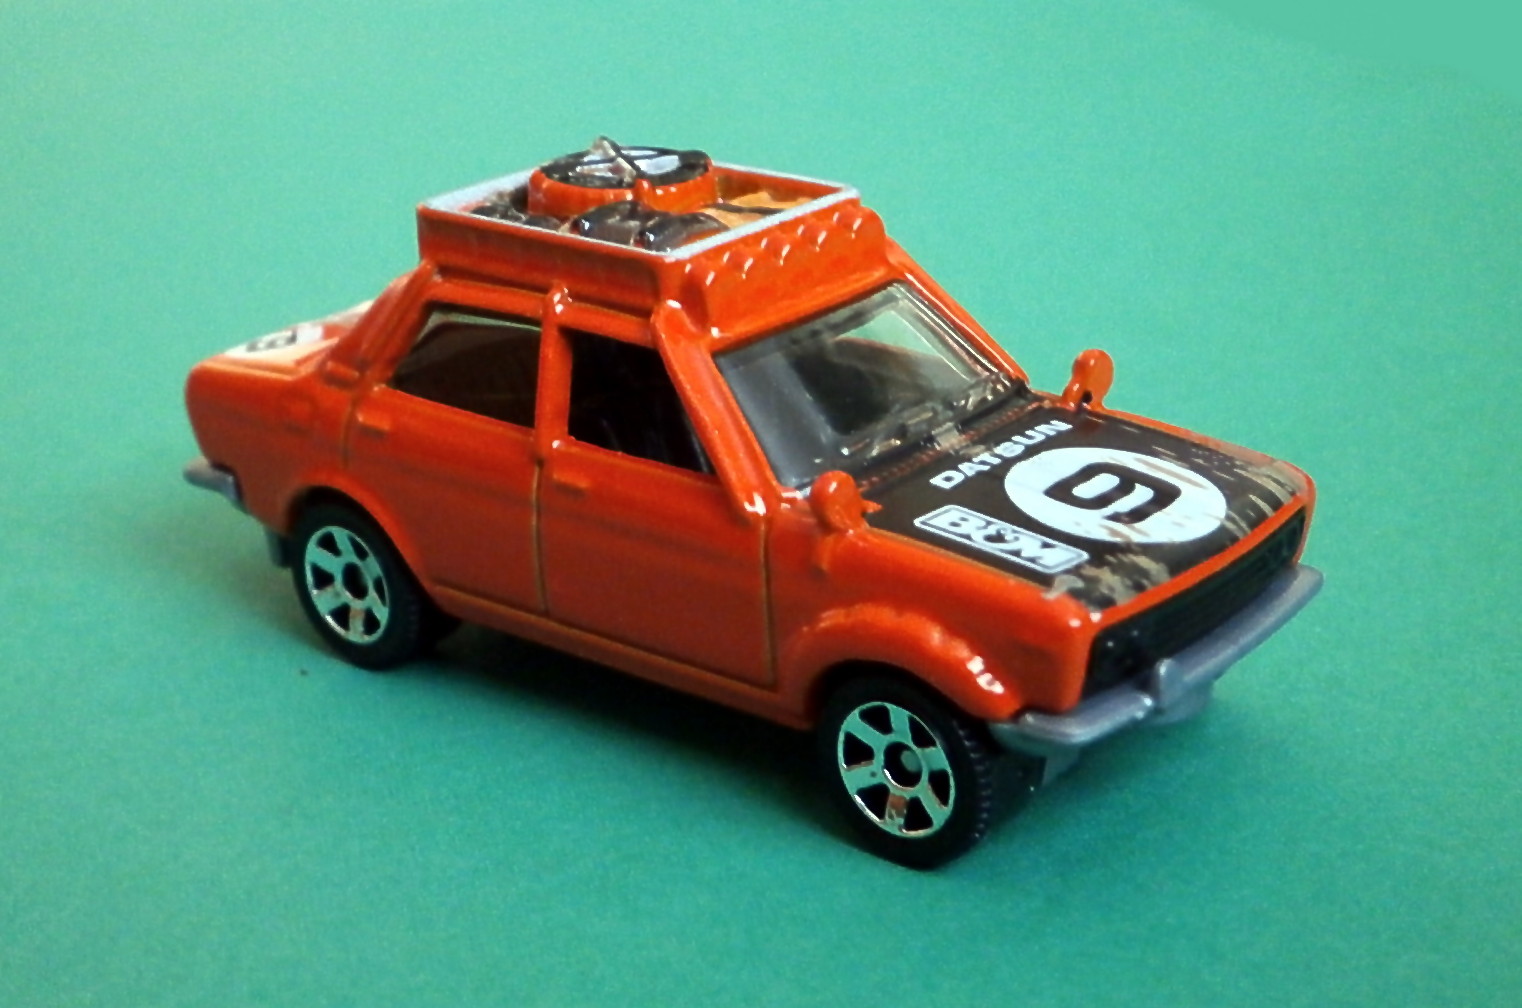 70 Datsun 510 | Matchbox Cars Wiki | Fandom